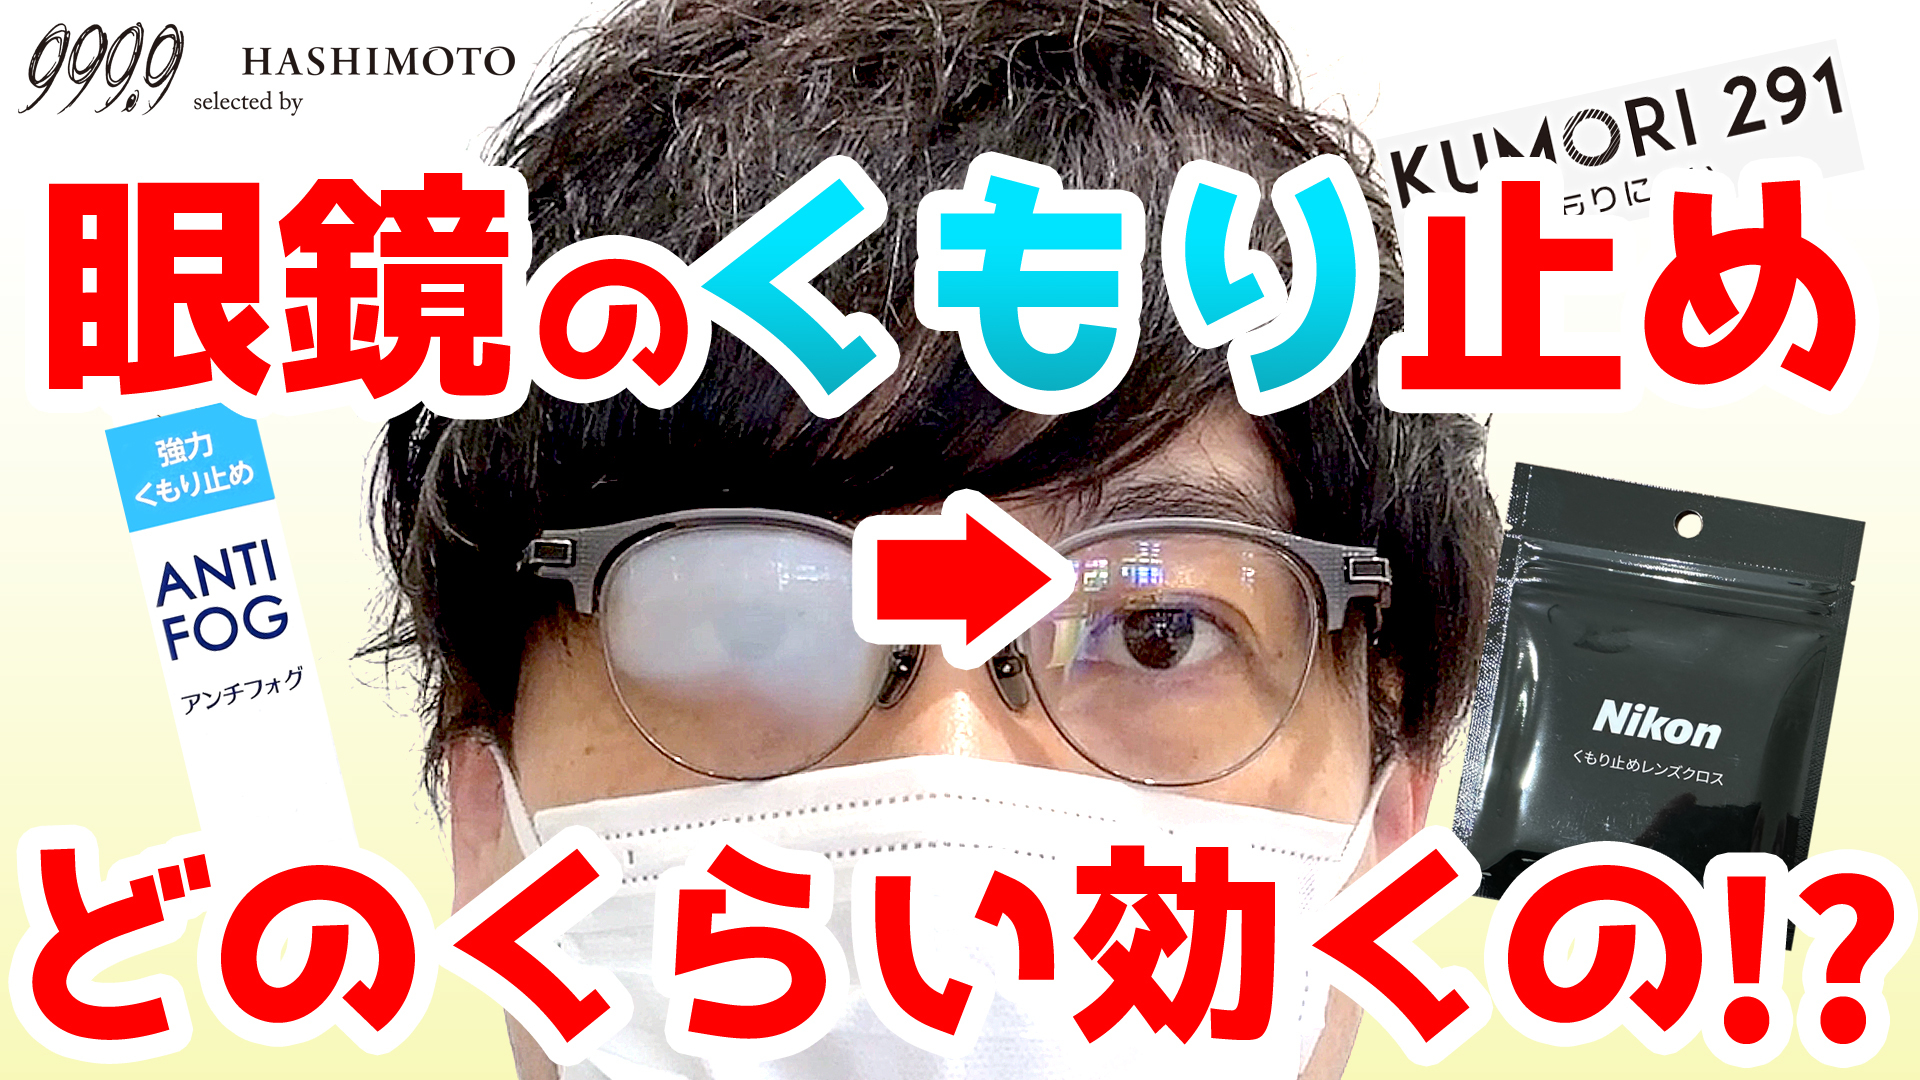 メガネのくもり止め くもらない眼鏡レンズ YouTube解説 茨城県つくば市 999.9 ハシモト